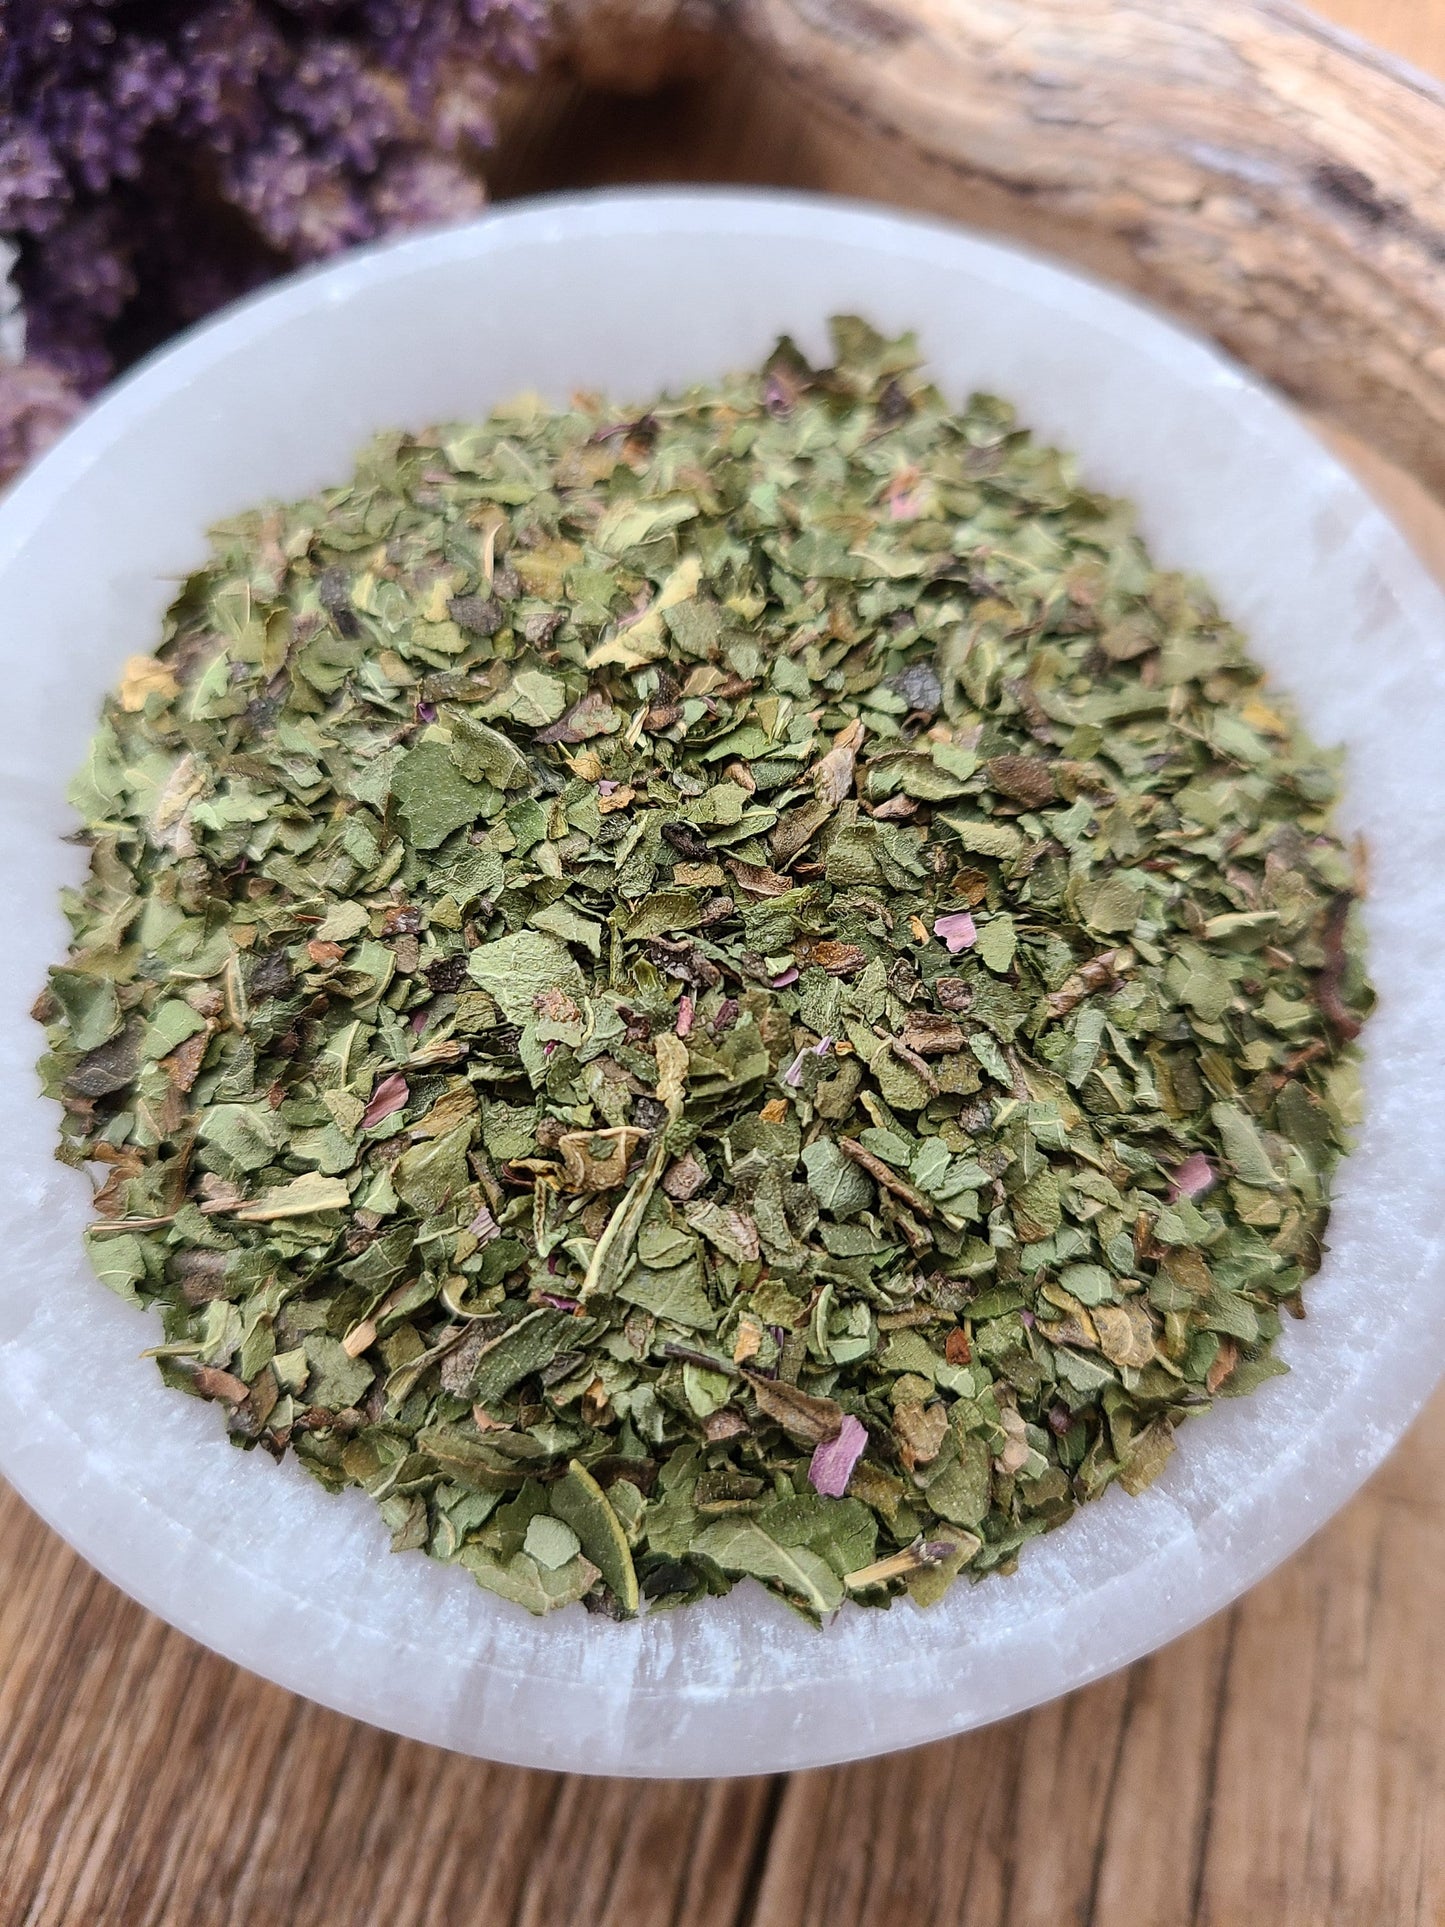 Echinacea Herb | Echinacea Purpurea